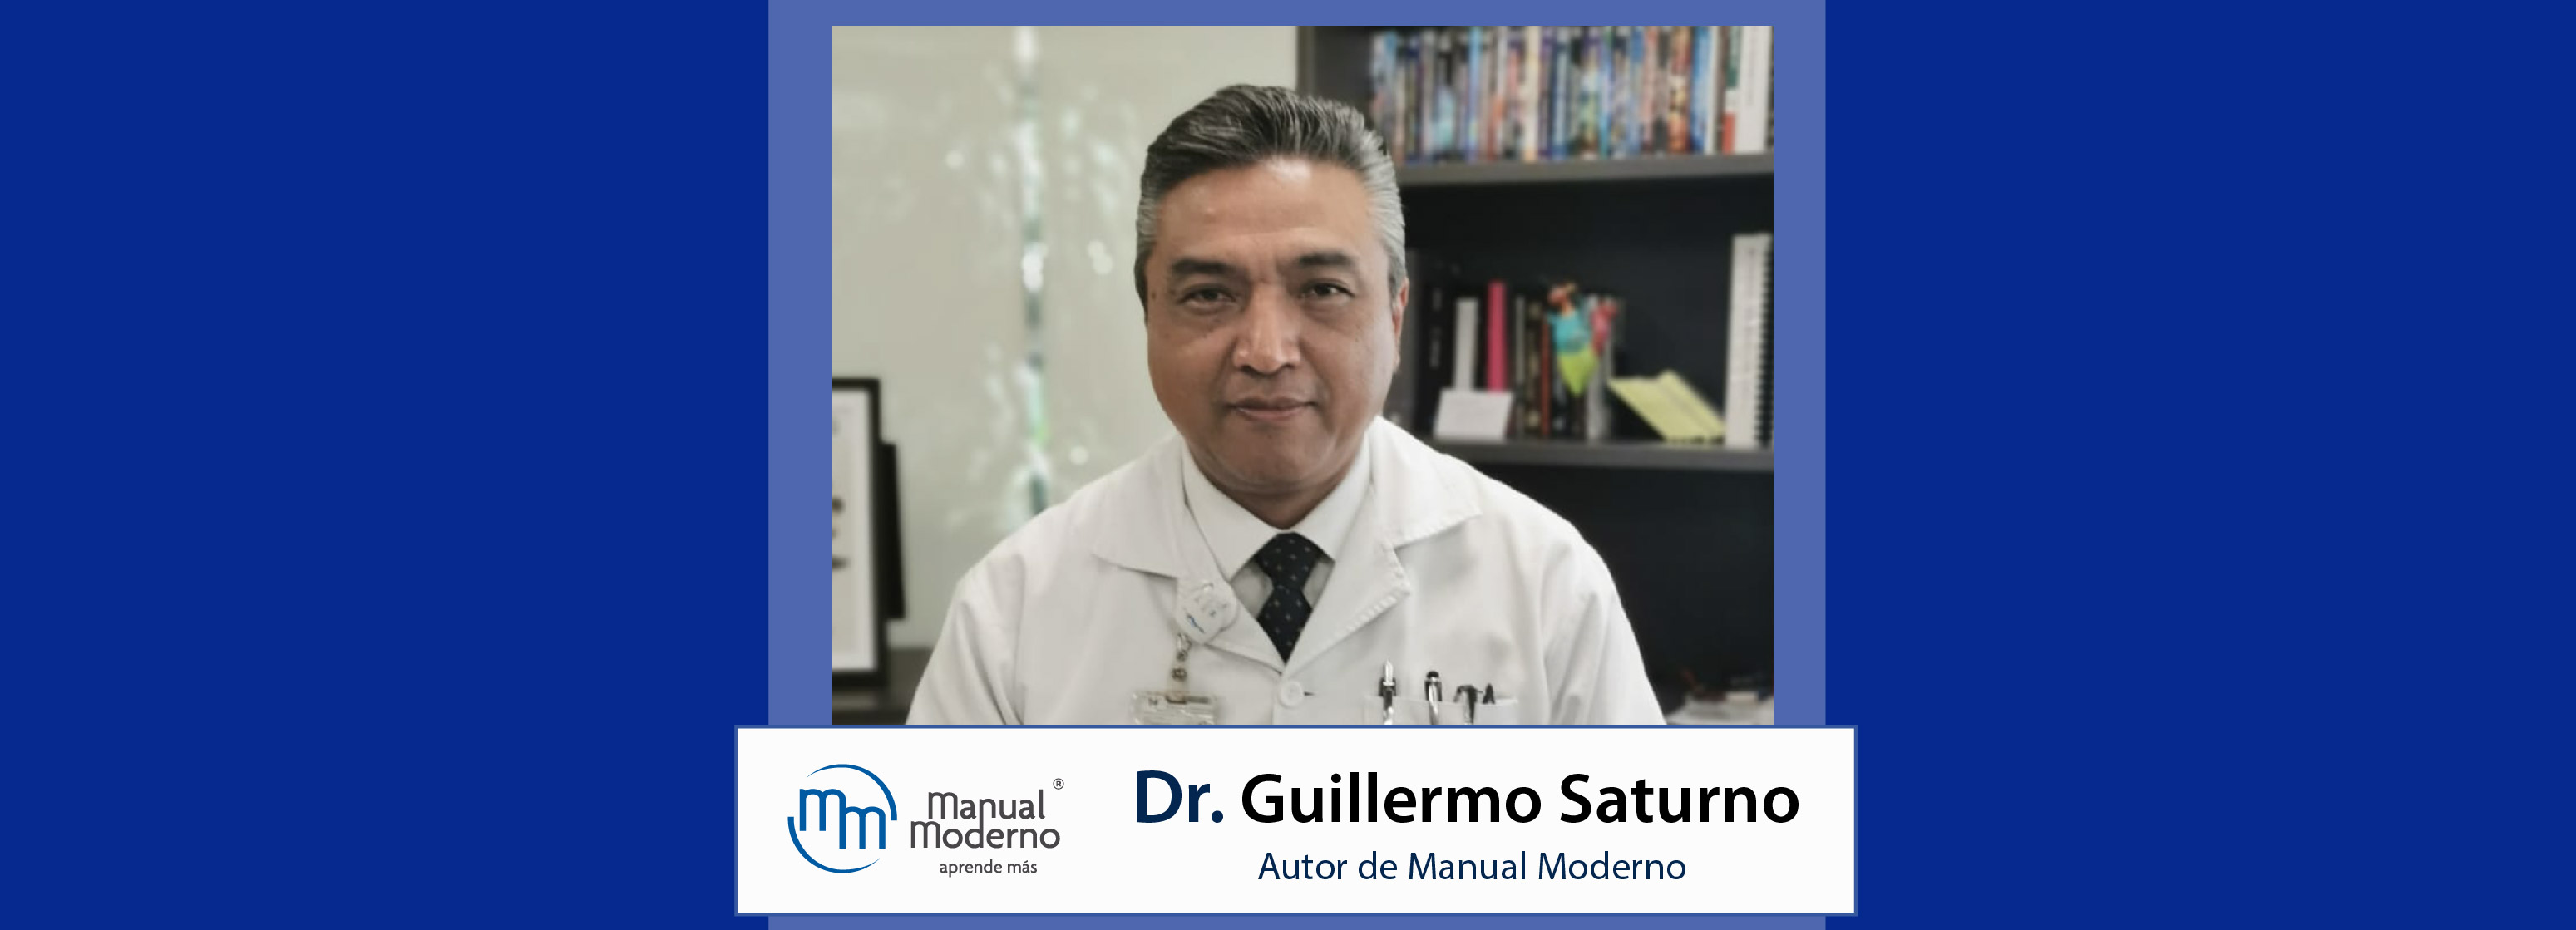 Nuestros Autores. Dr. Guillermo Saturno